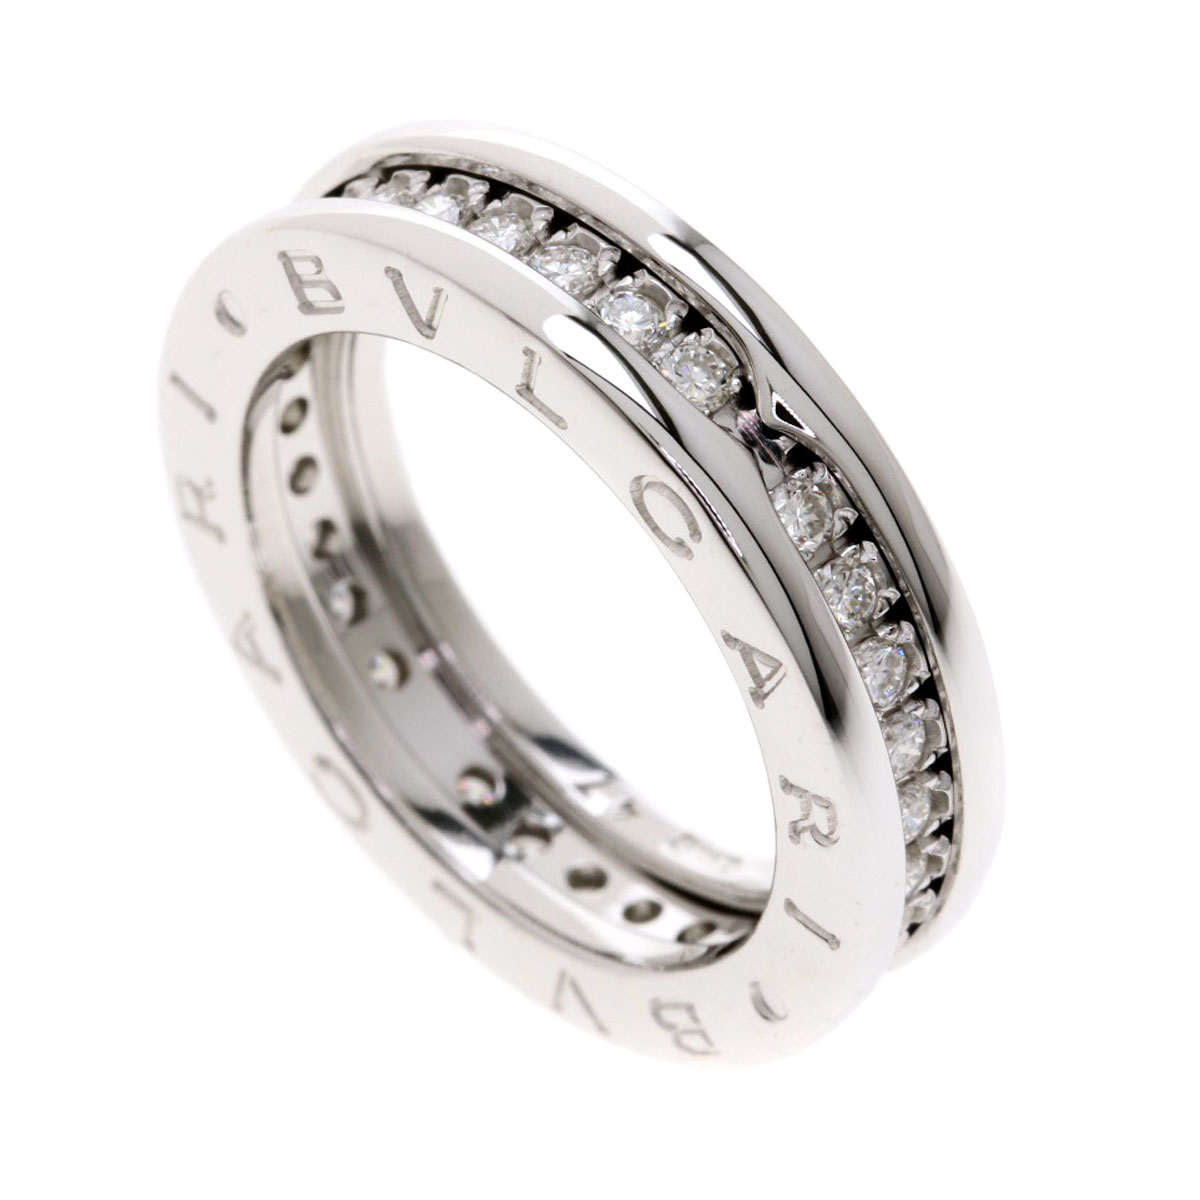 Bvlgari Wedding Ring Women Wedding Rings Sets Ideas